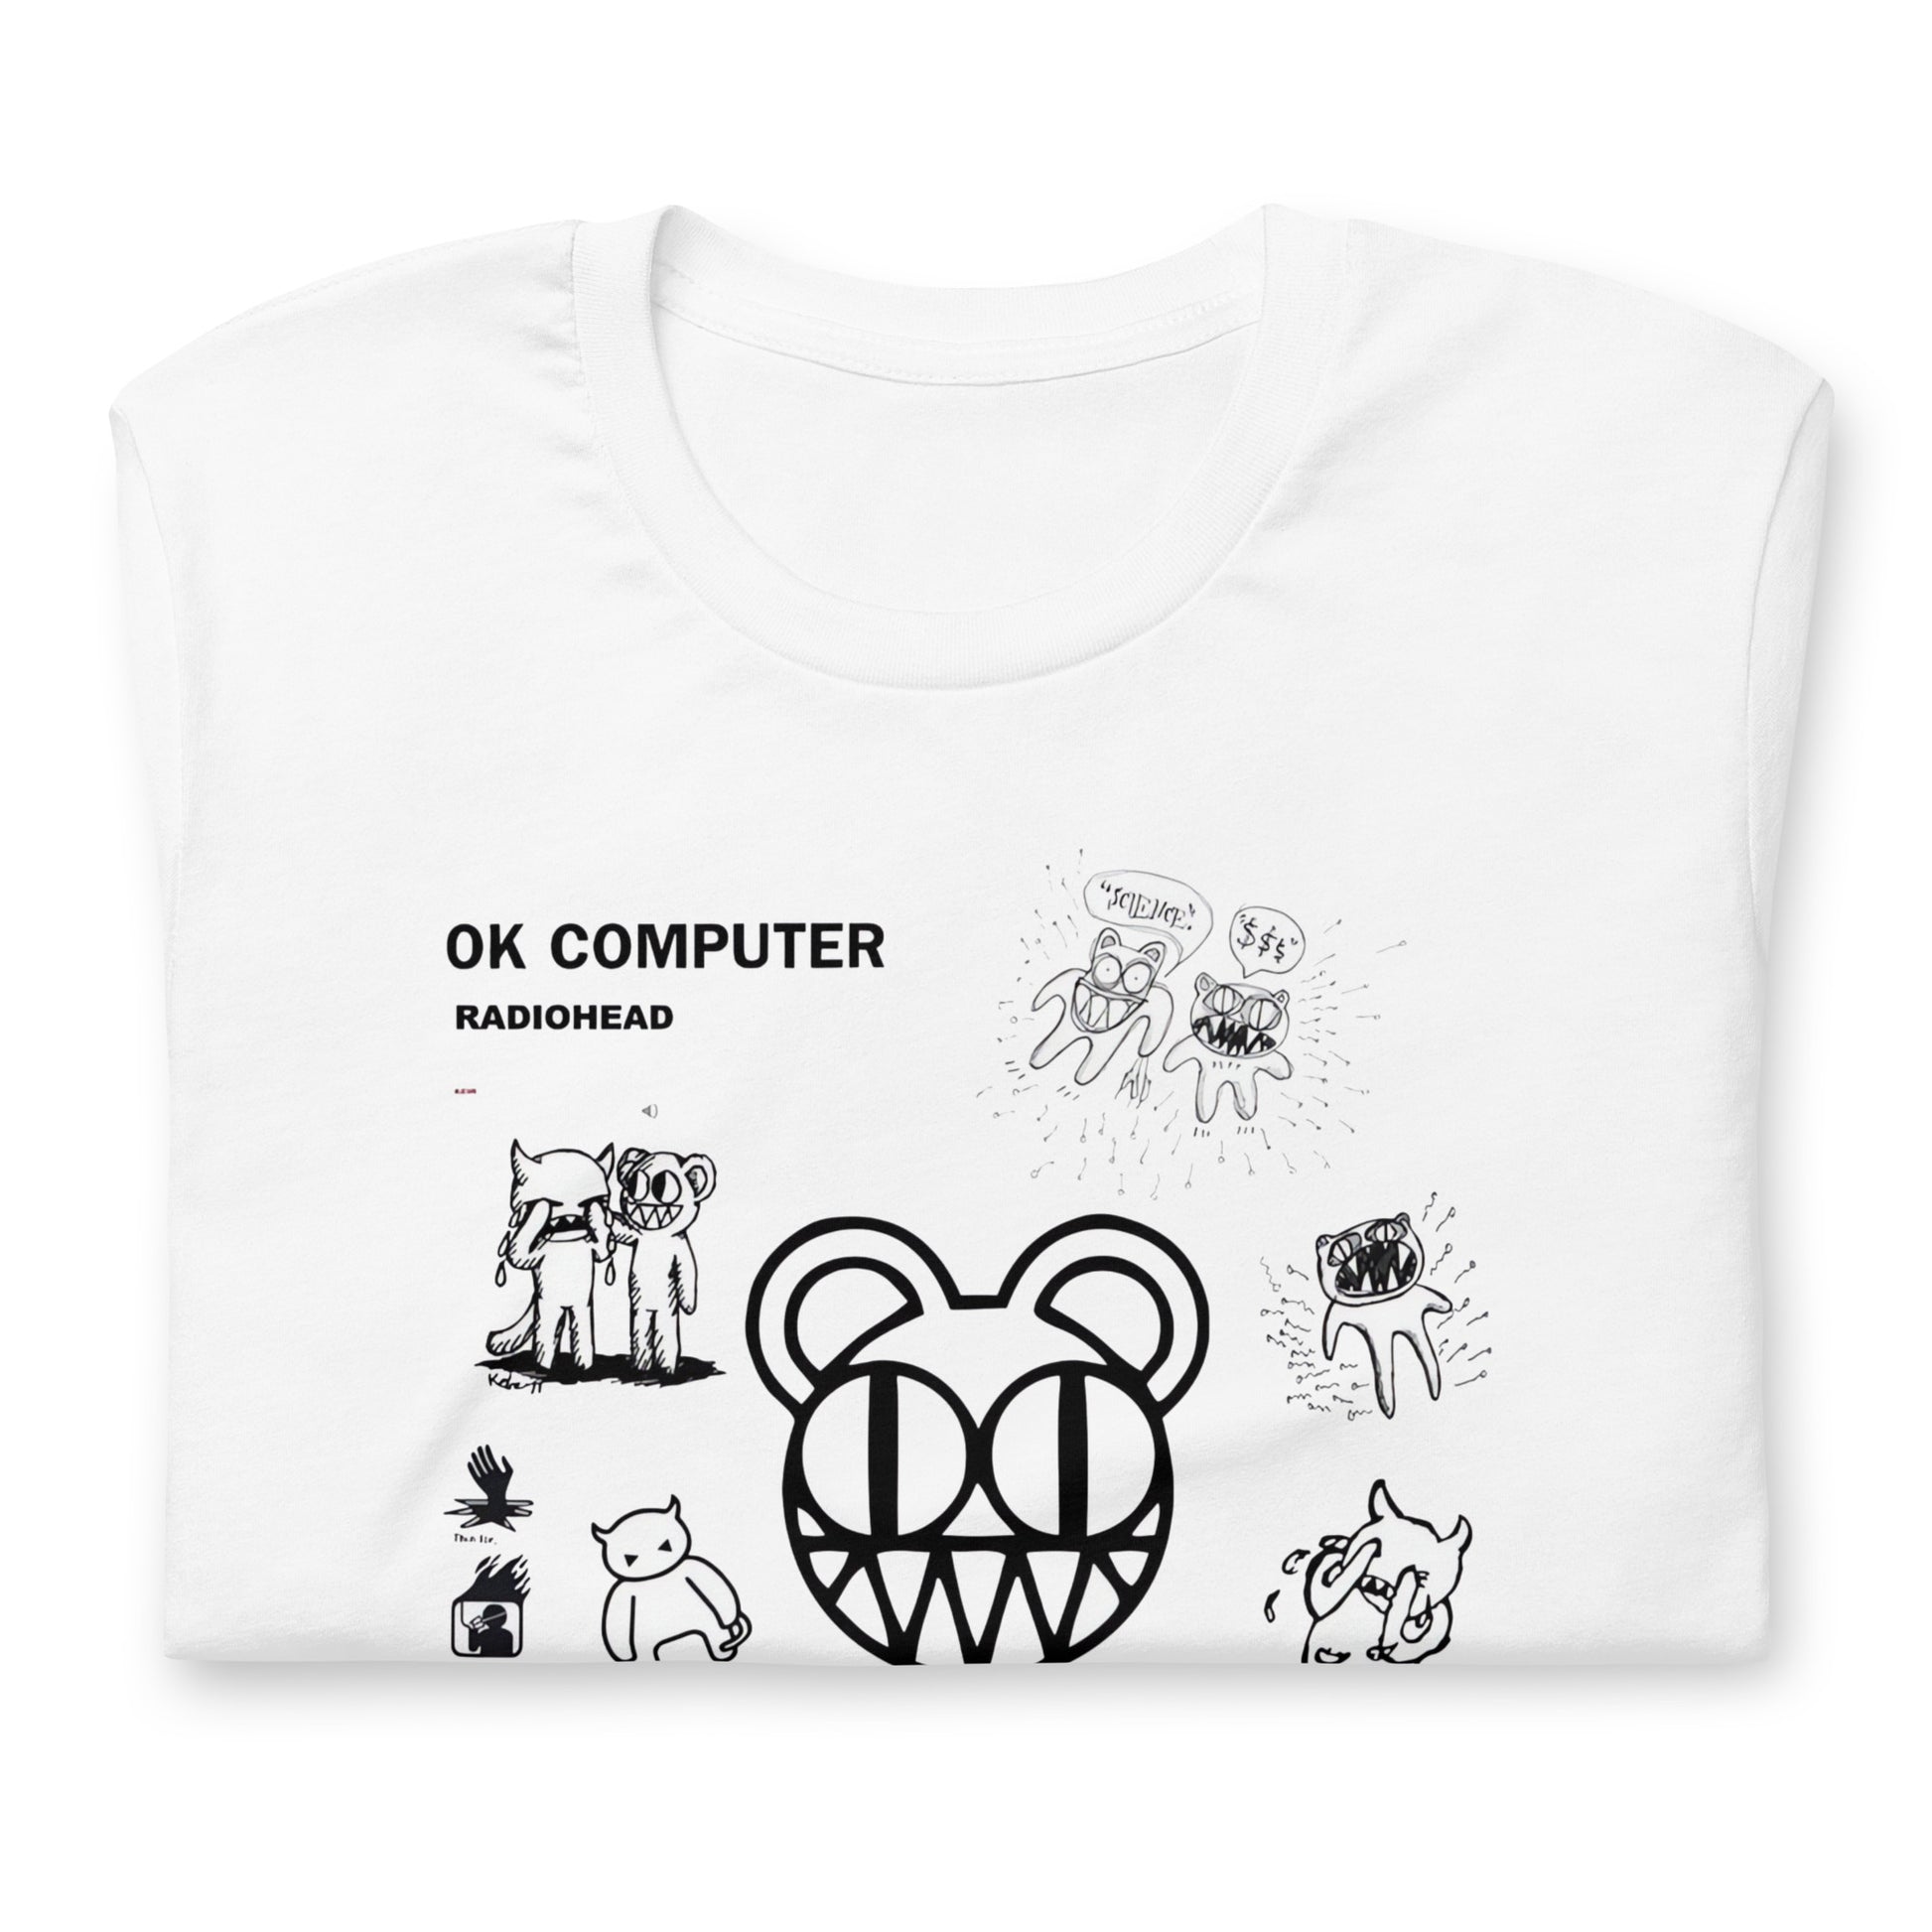 ¡Compra el mejor merchandising en Superstar! Encuentra diseños únicos y de alta calidad en camisetas únicas, Camiseta Radiohead Ok Computer